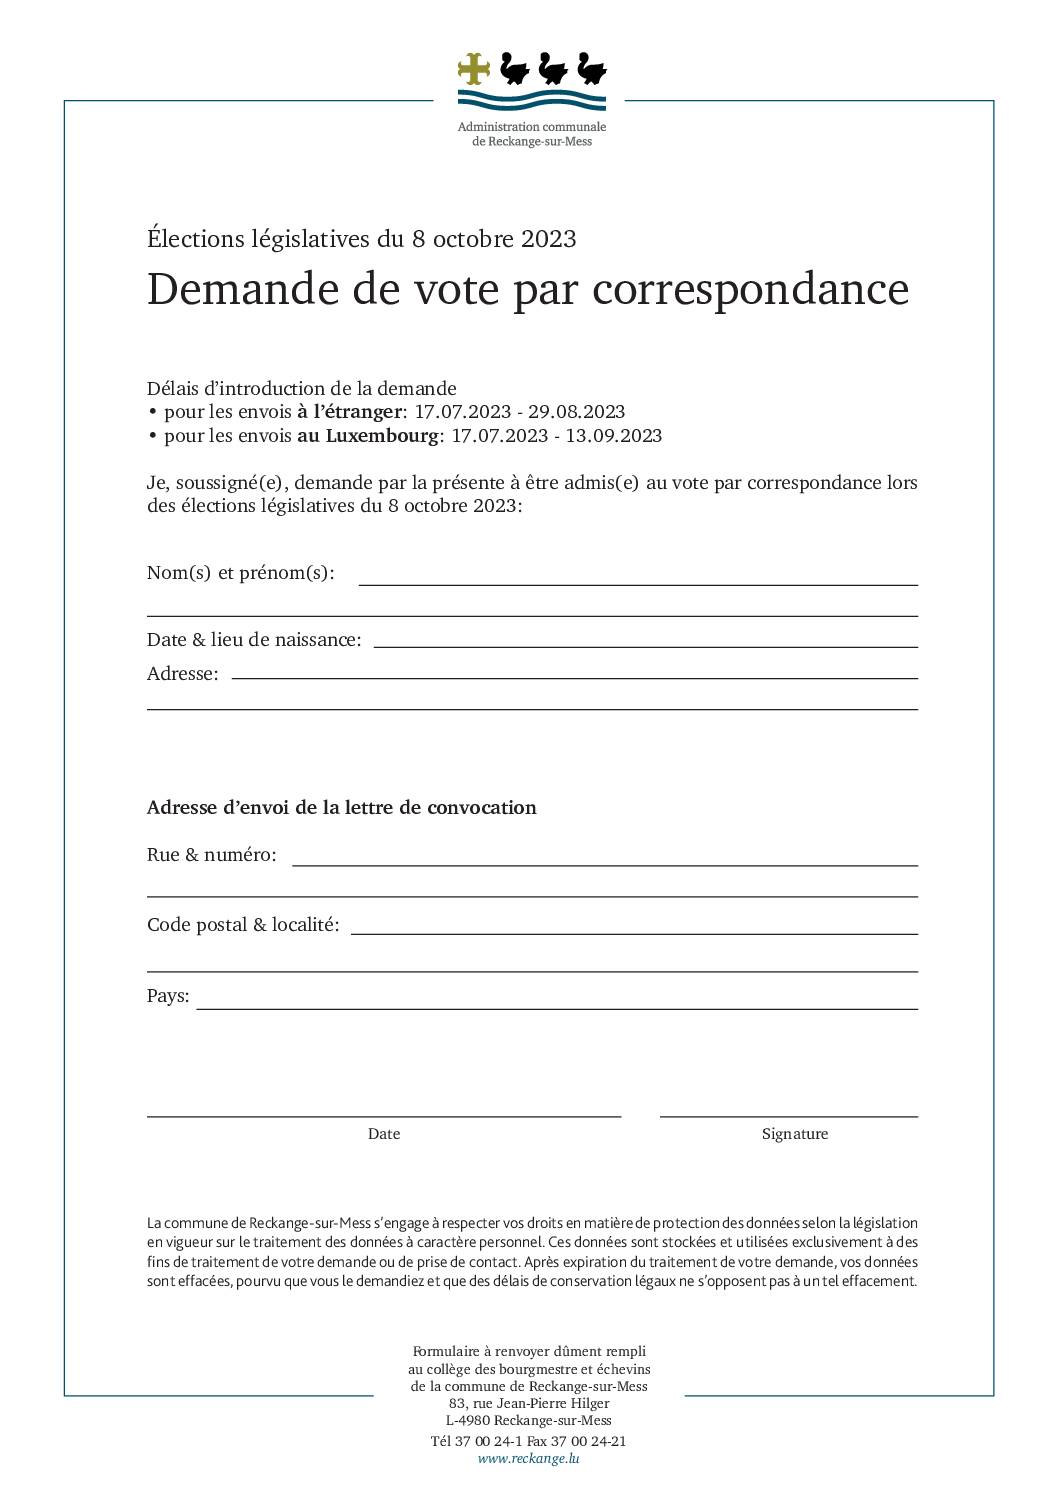 Formulaire - Demande de vote par correspondance - élections législatives du 8 octobre 2023